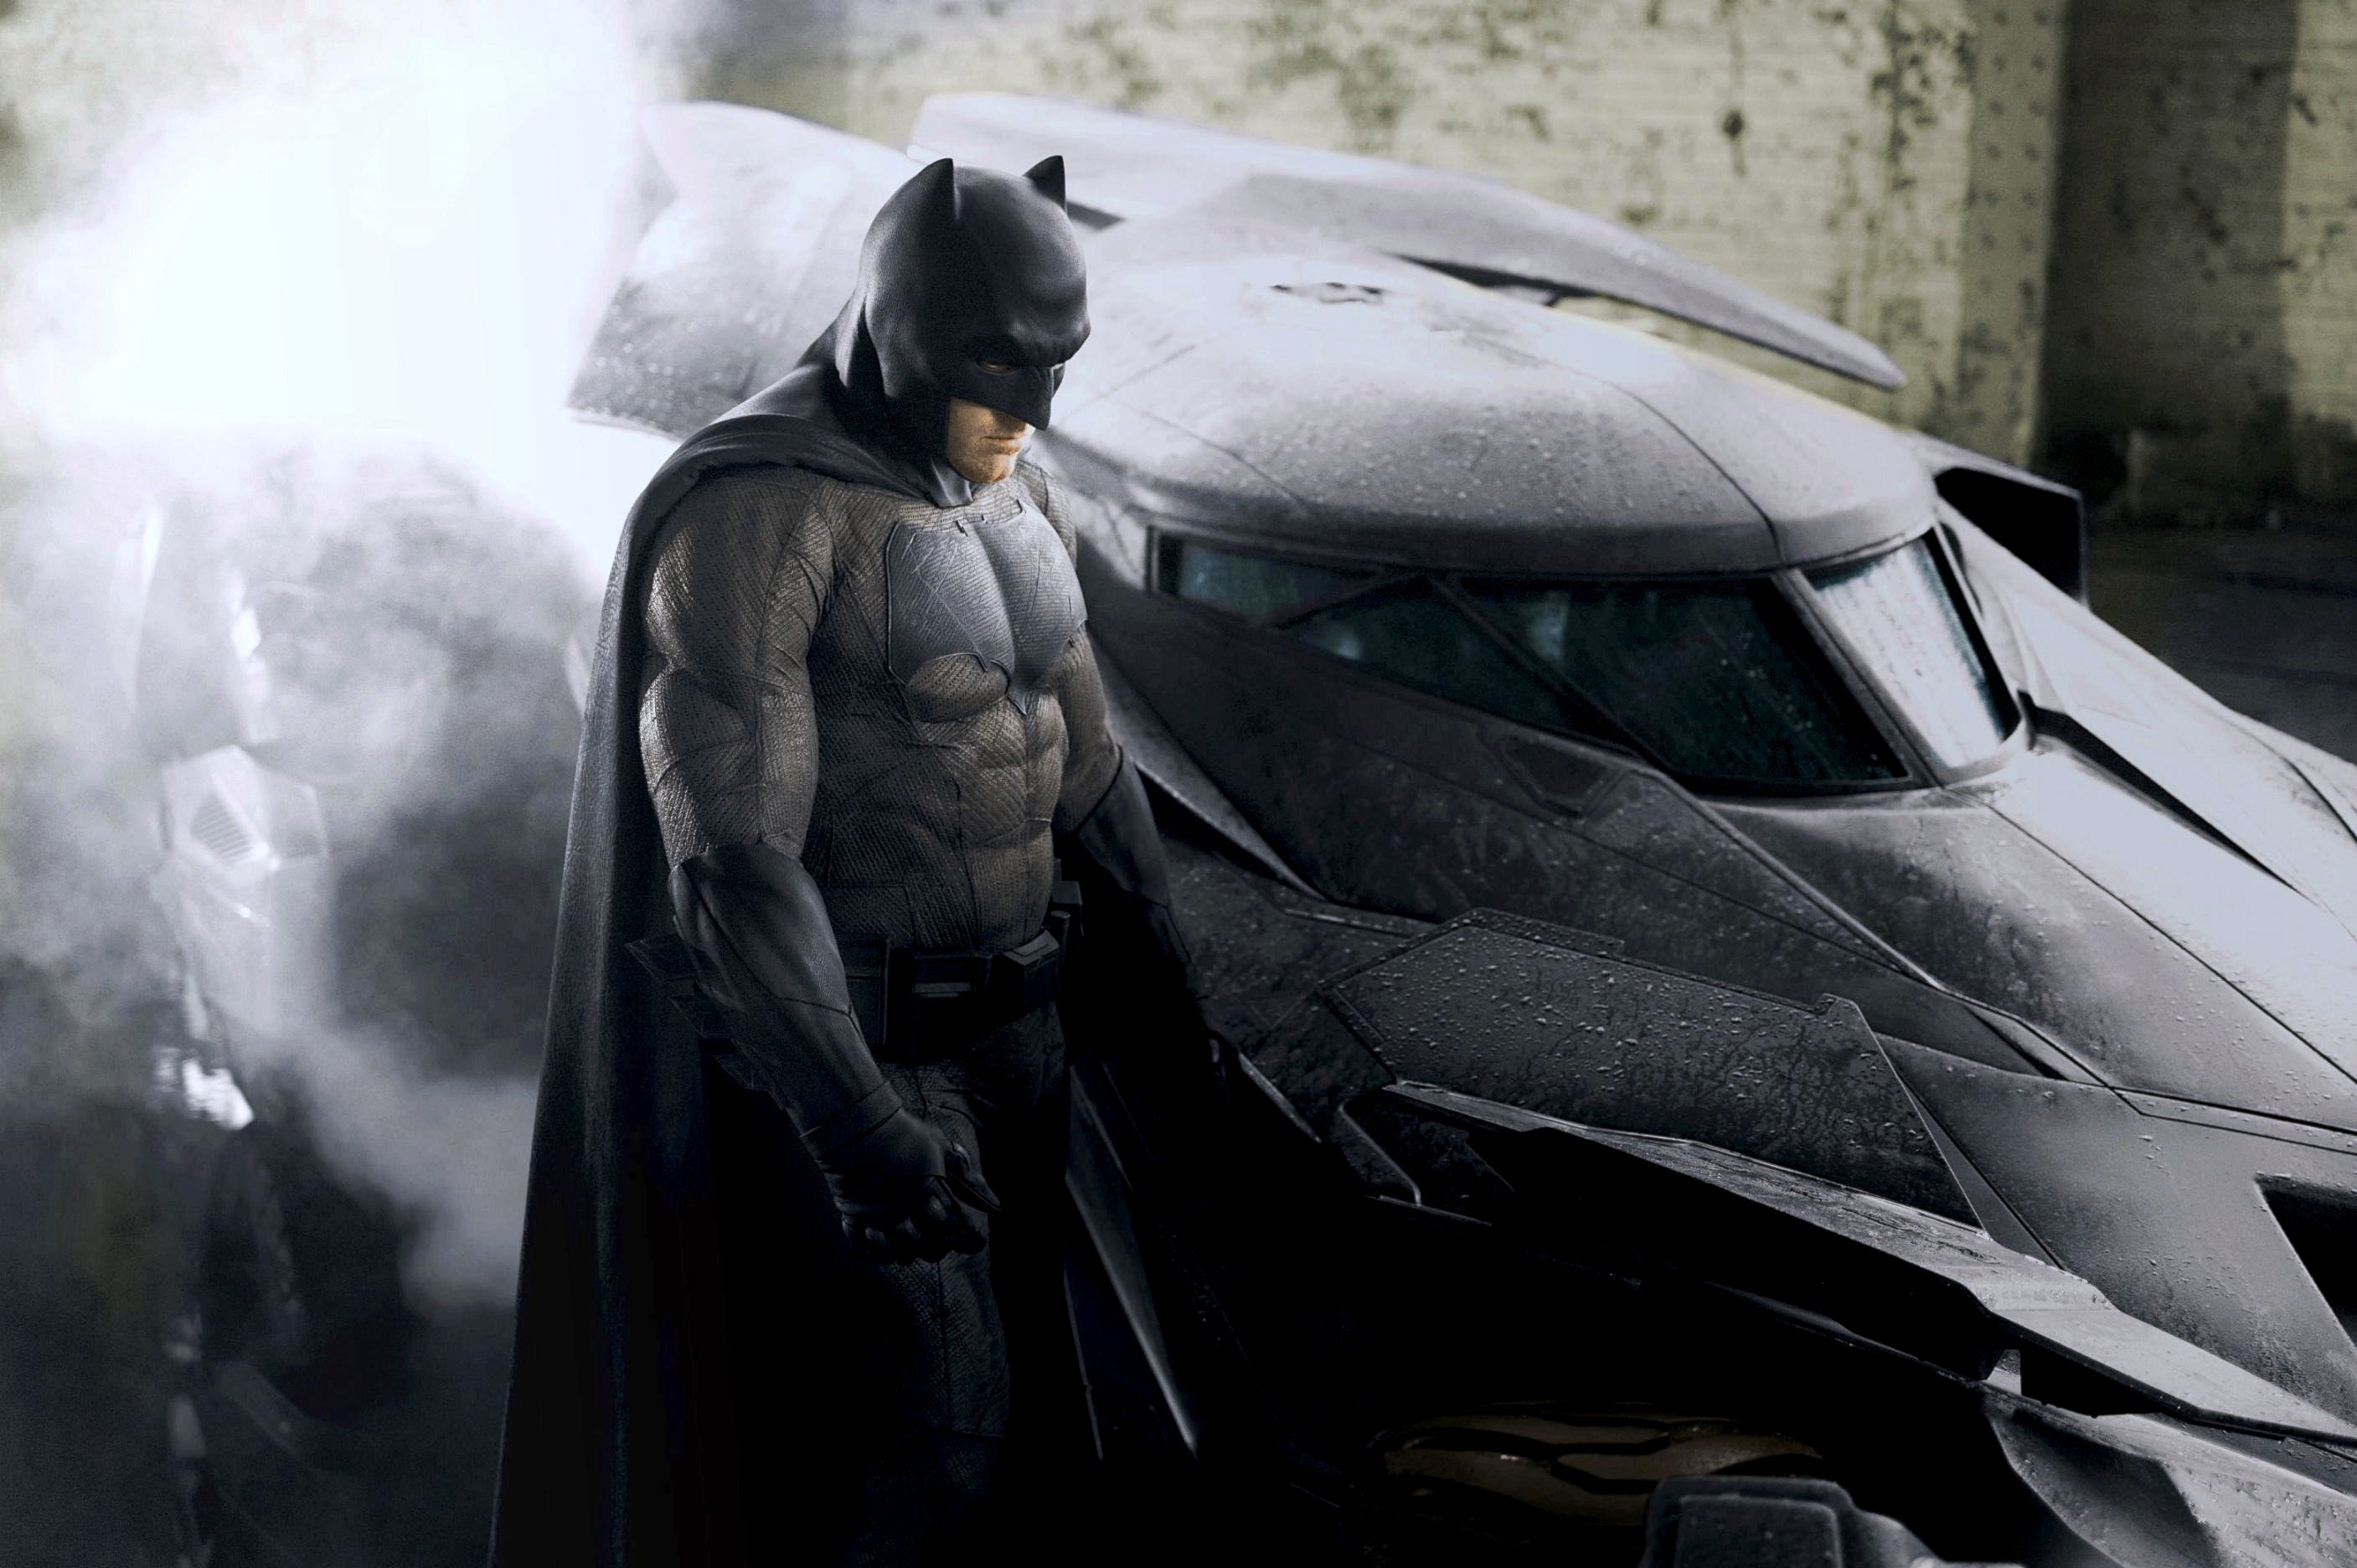 batman v superman review бэтмен против супермена на заре справедливости рецензия обзор отвратительные мужики disgusting men